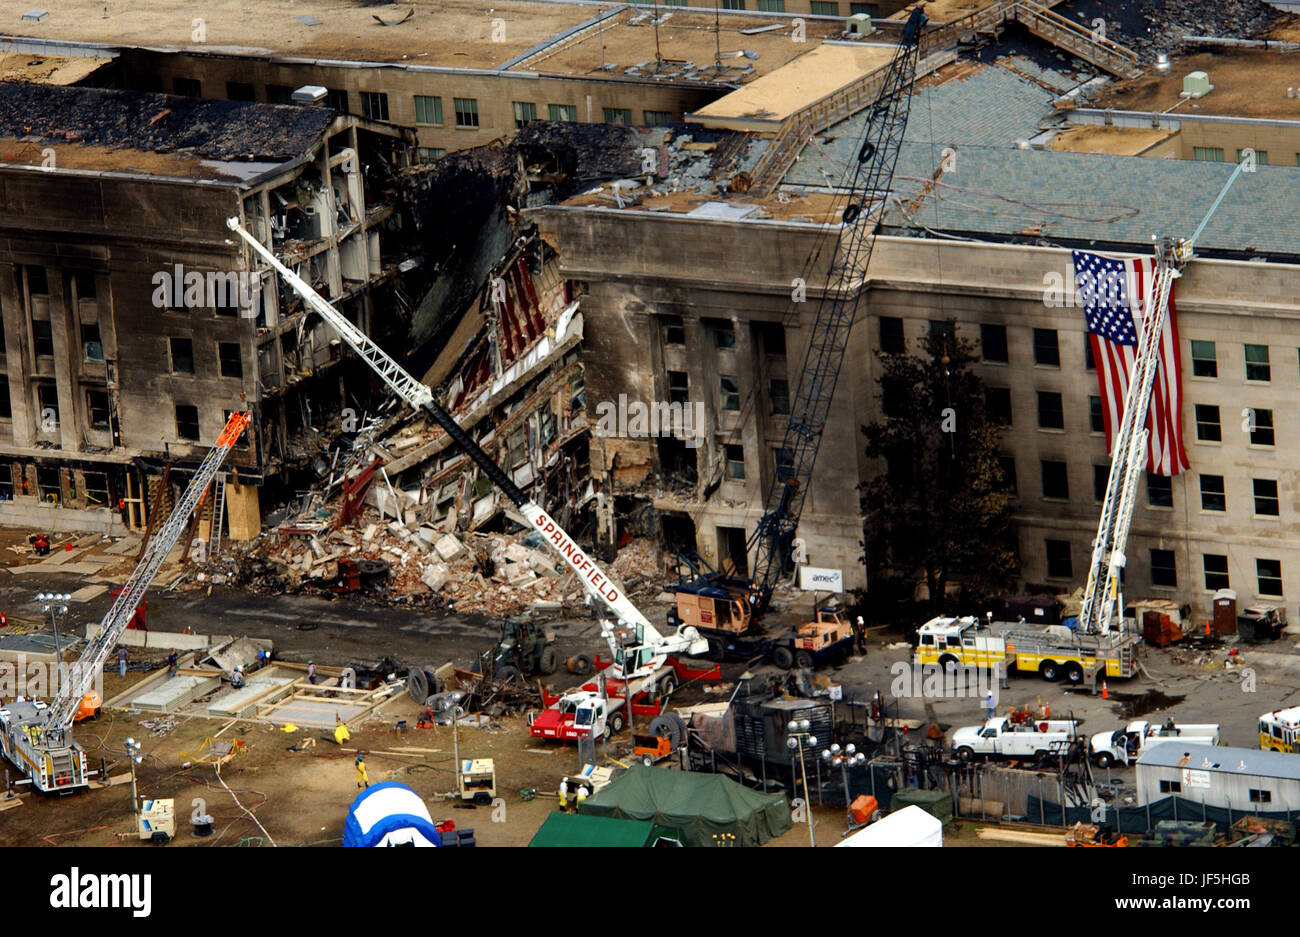 0 1 0 9 1 4 - F - 8 0 0 6 R - 0 0 3 agenti FBI, vigili del fuoco, gli operatori di soccorso e ingegneri lavorano al Pentagono crash site sul Sett. 14, 2001, dove un alto-jacked voli American Airlines ha sbattuto nell'edificio sul Sett. 11. L'attacco terroristico ha causato ingenti danni alla parete ovest dell'edificio e seguito di simili attacchi contro le torri gemelle del World Trade Center a New York City. DoD foto di Tech. Sgt. Cedric H. Rudisill. Foto Stock